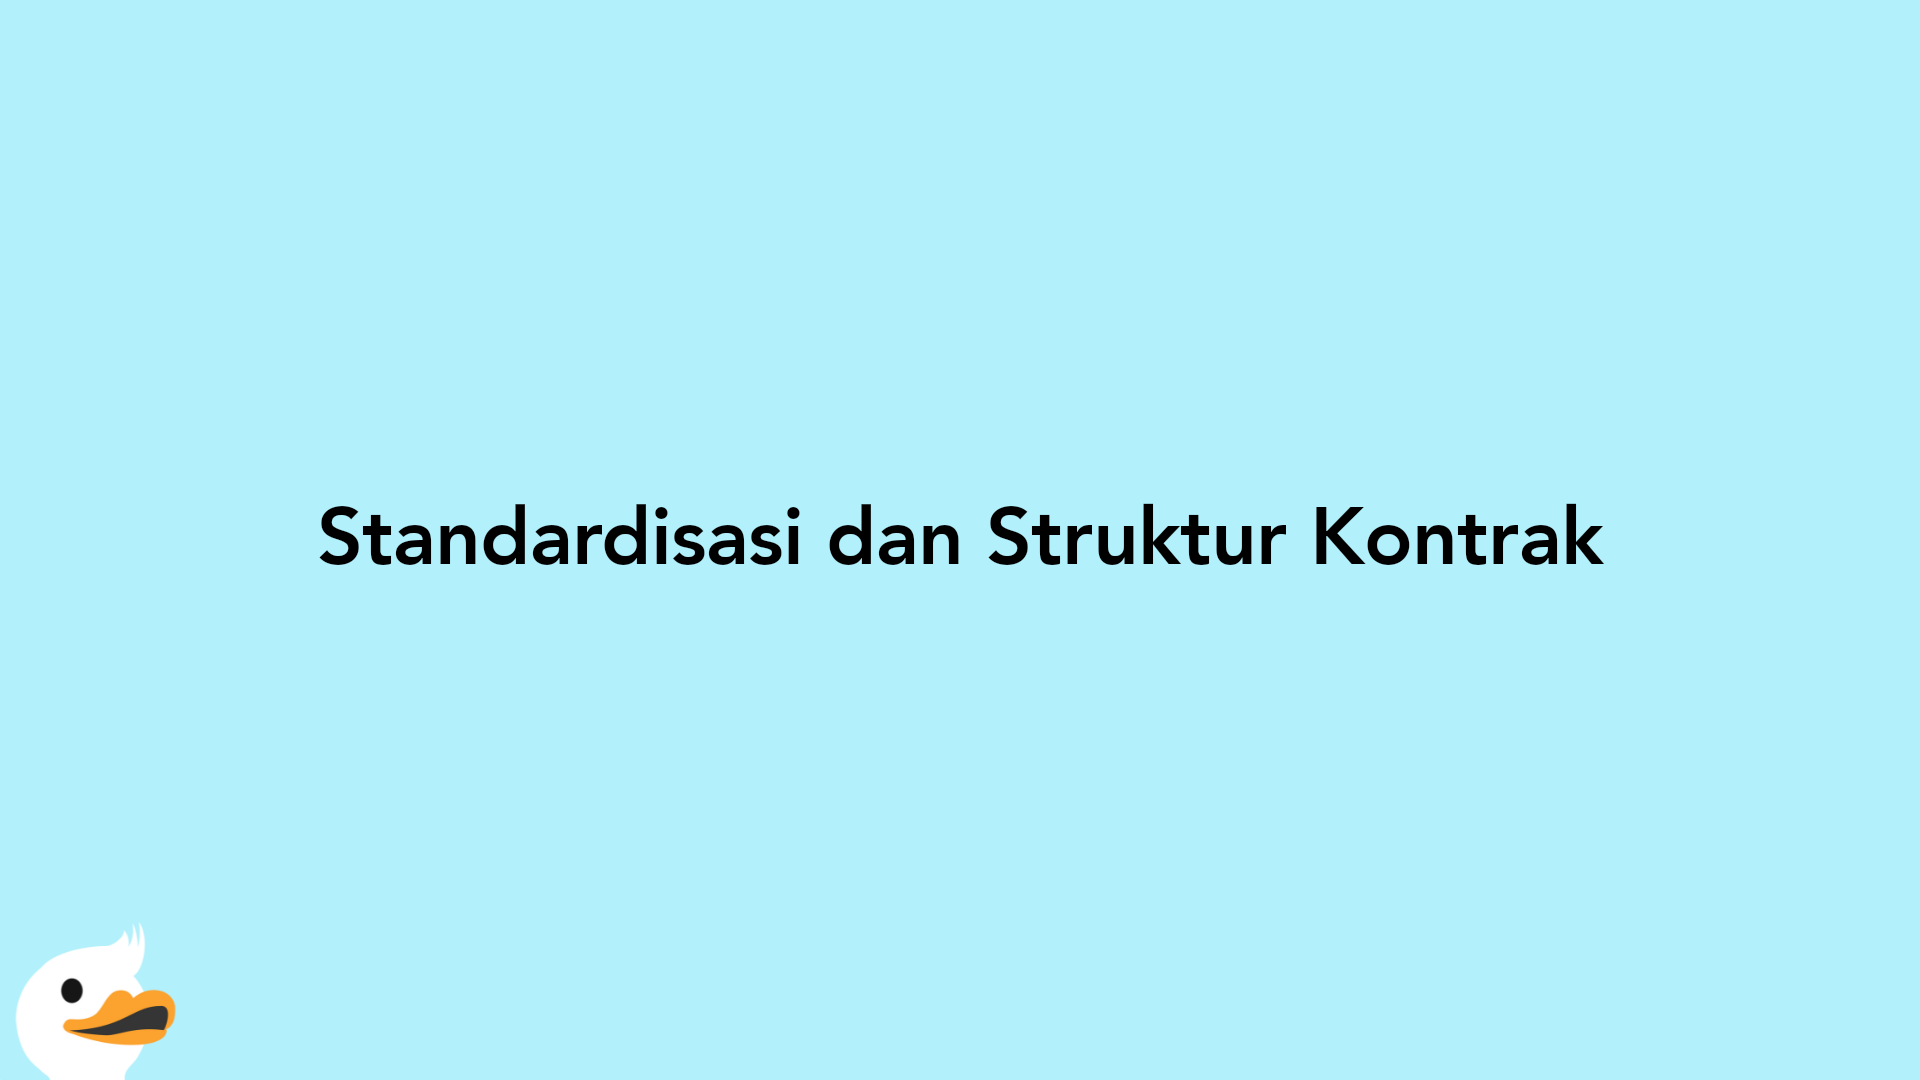 Standardisasi dan Struktur Kontrak